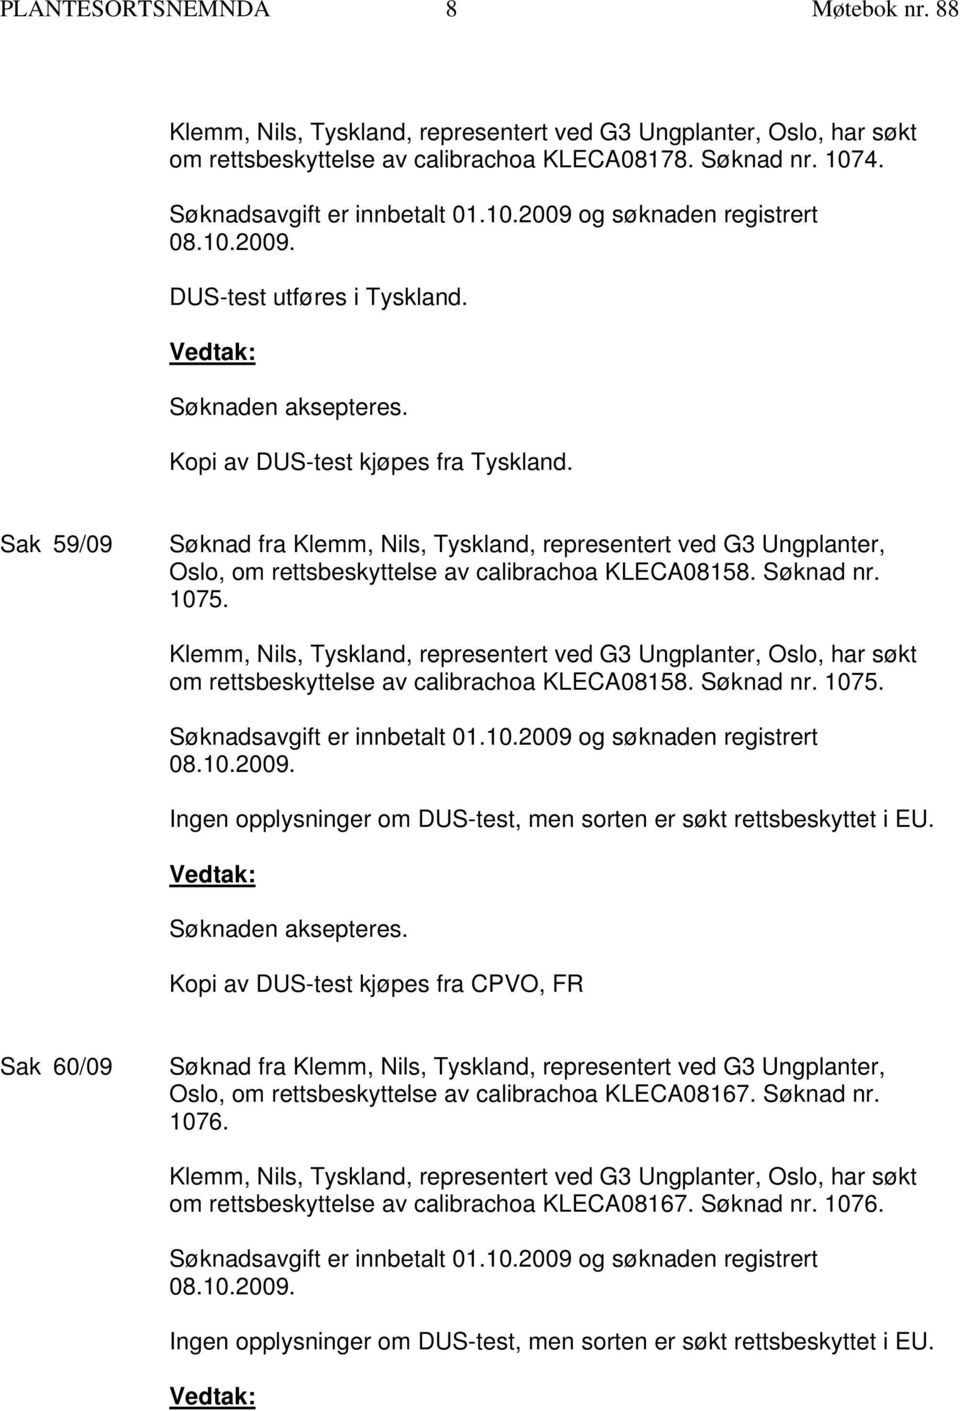 Kopi av DUS-test kjøpes fra CPVO, FR Sak 60/09 Oslo, om rettsbeskyttelse av calibrachoa KLECA08167. Søknad nr. 1076. om rettsbeskyttelse av calibrachoa KLECA08167. Søknad nr. 1076. Søknadsavgift er innbetalt 01.